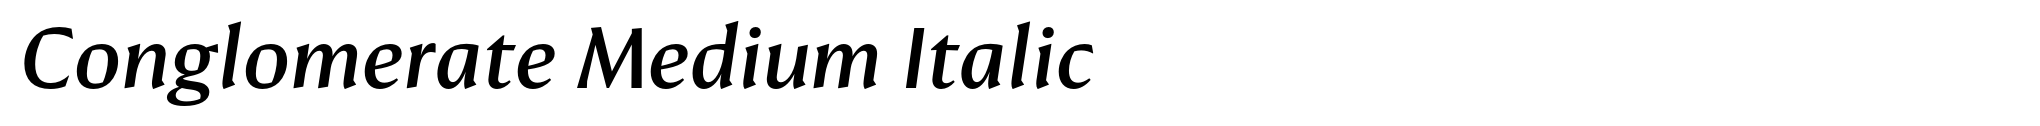 Conglomerate Medium Italic image